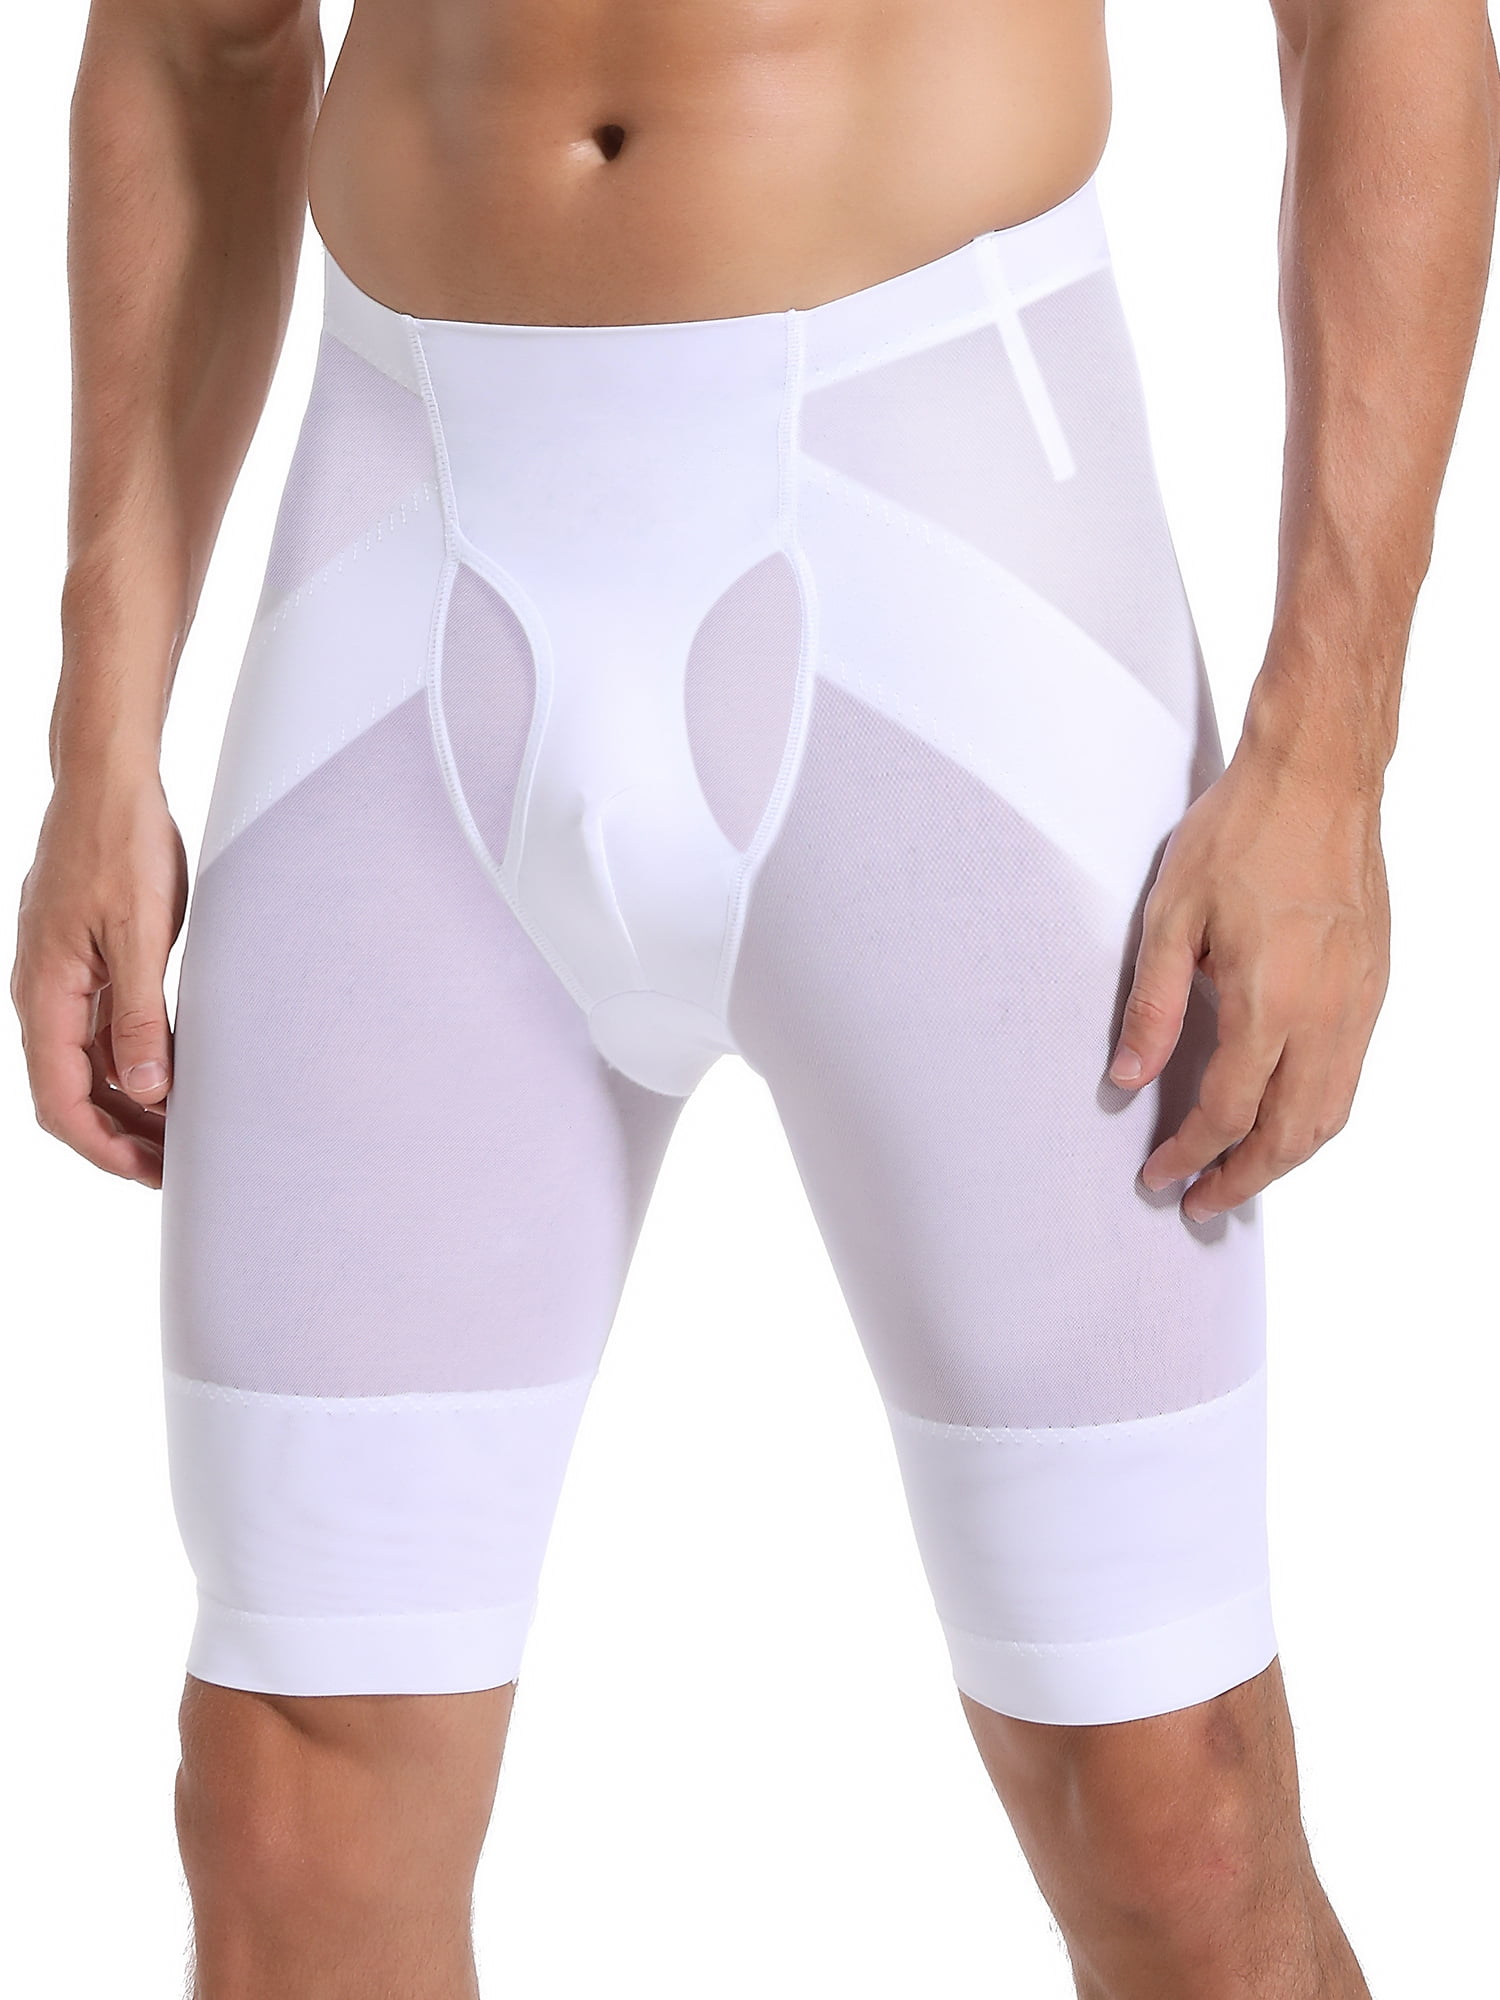 ANYFIT WEAR Men Tummy Control Shorts High Waist Slimming Shapewear Girdle  Compression Underwear Body Shaper Boxer Brief 